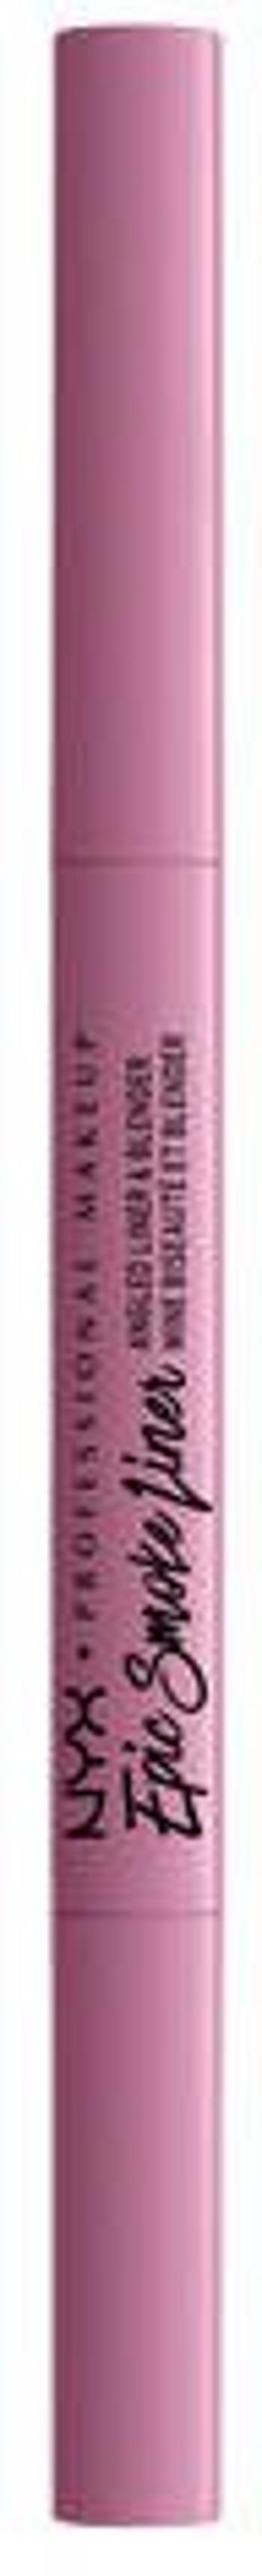 NYX Professional Makeup Epic Smoke Liner dlouhotrvající tužka na oči - 04 Rose Dust 0.17 g